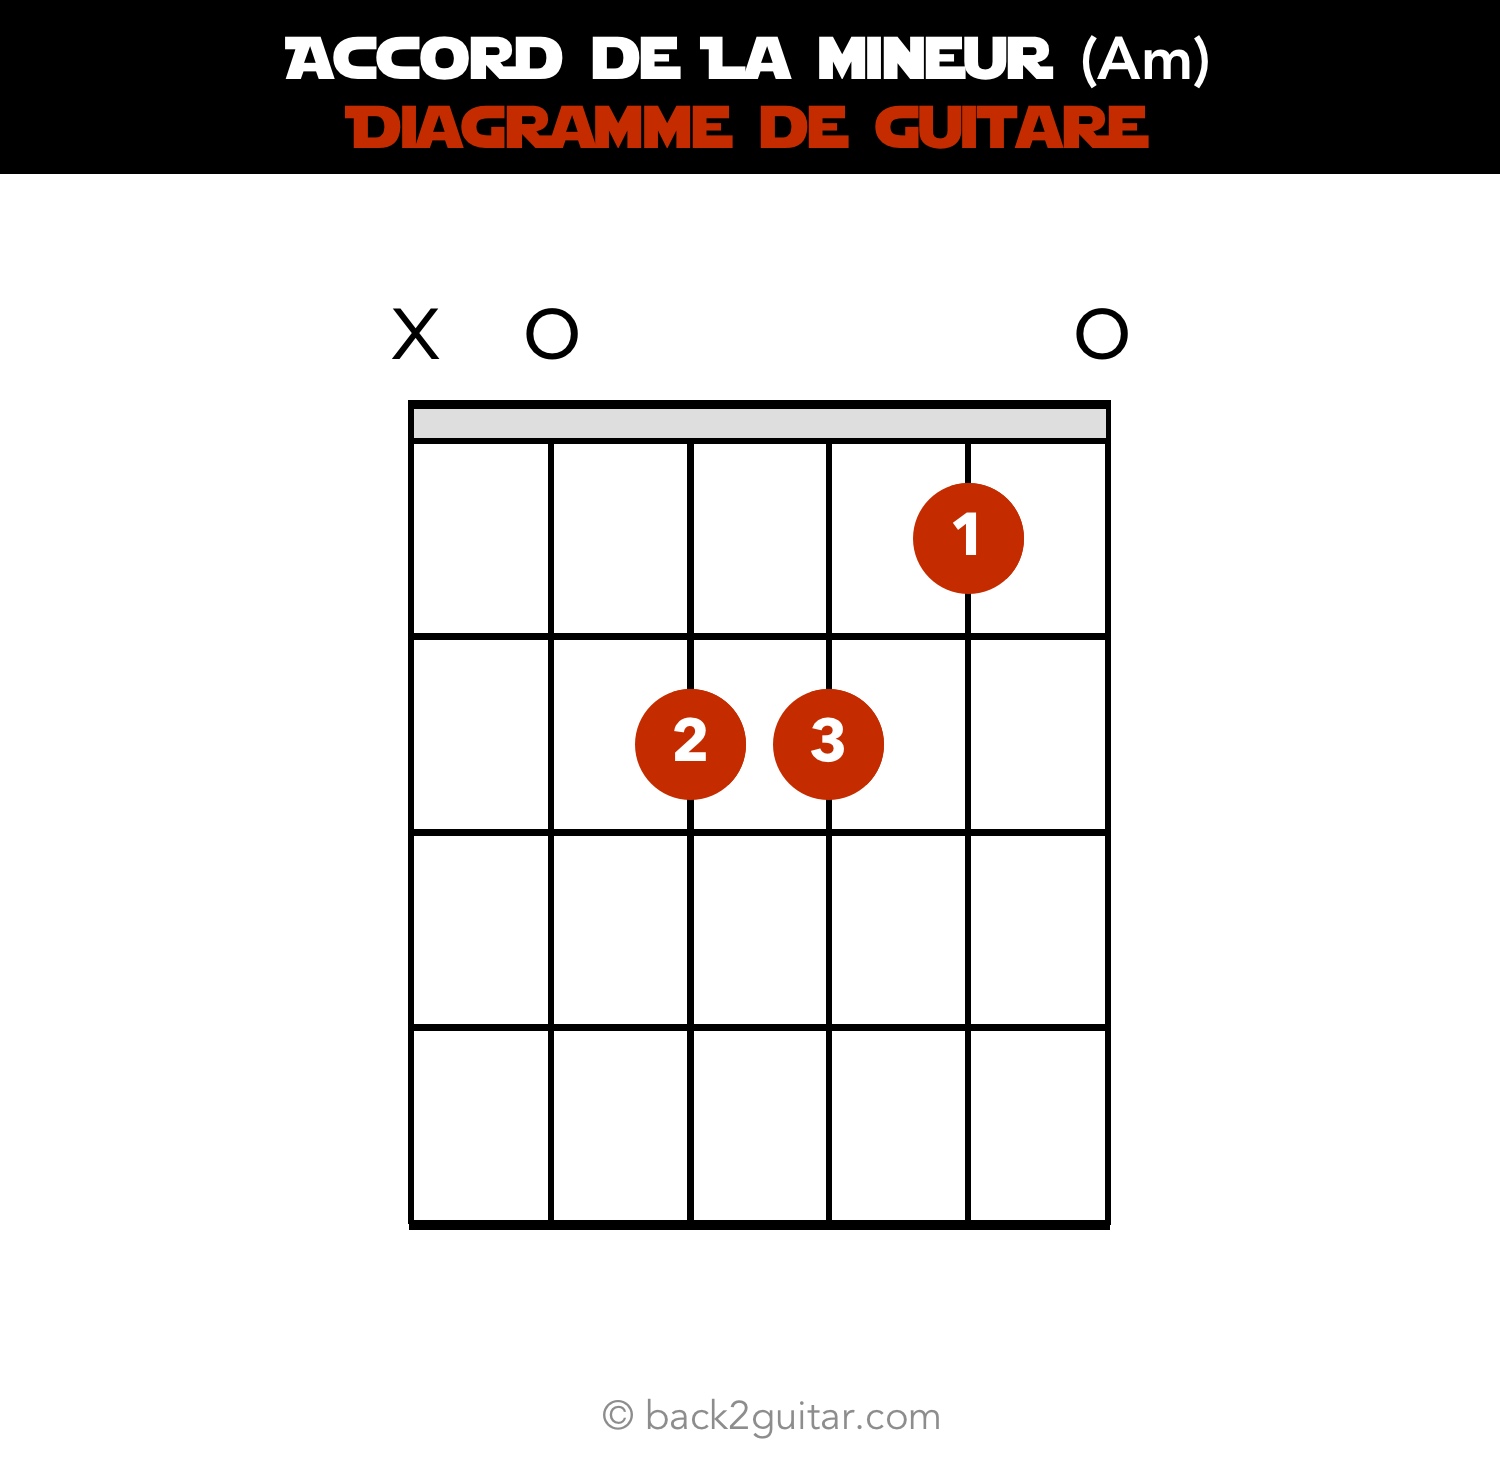 accord guitare la mineur diagramme guitare (Am)